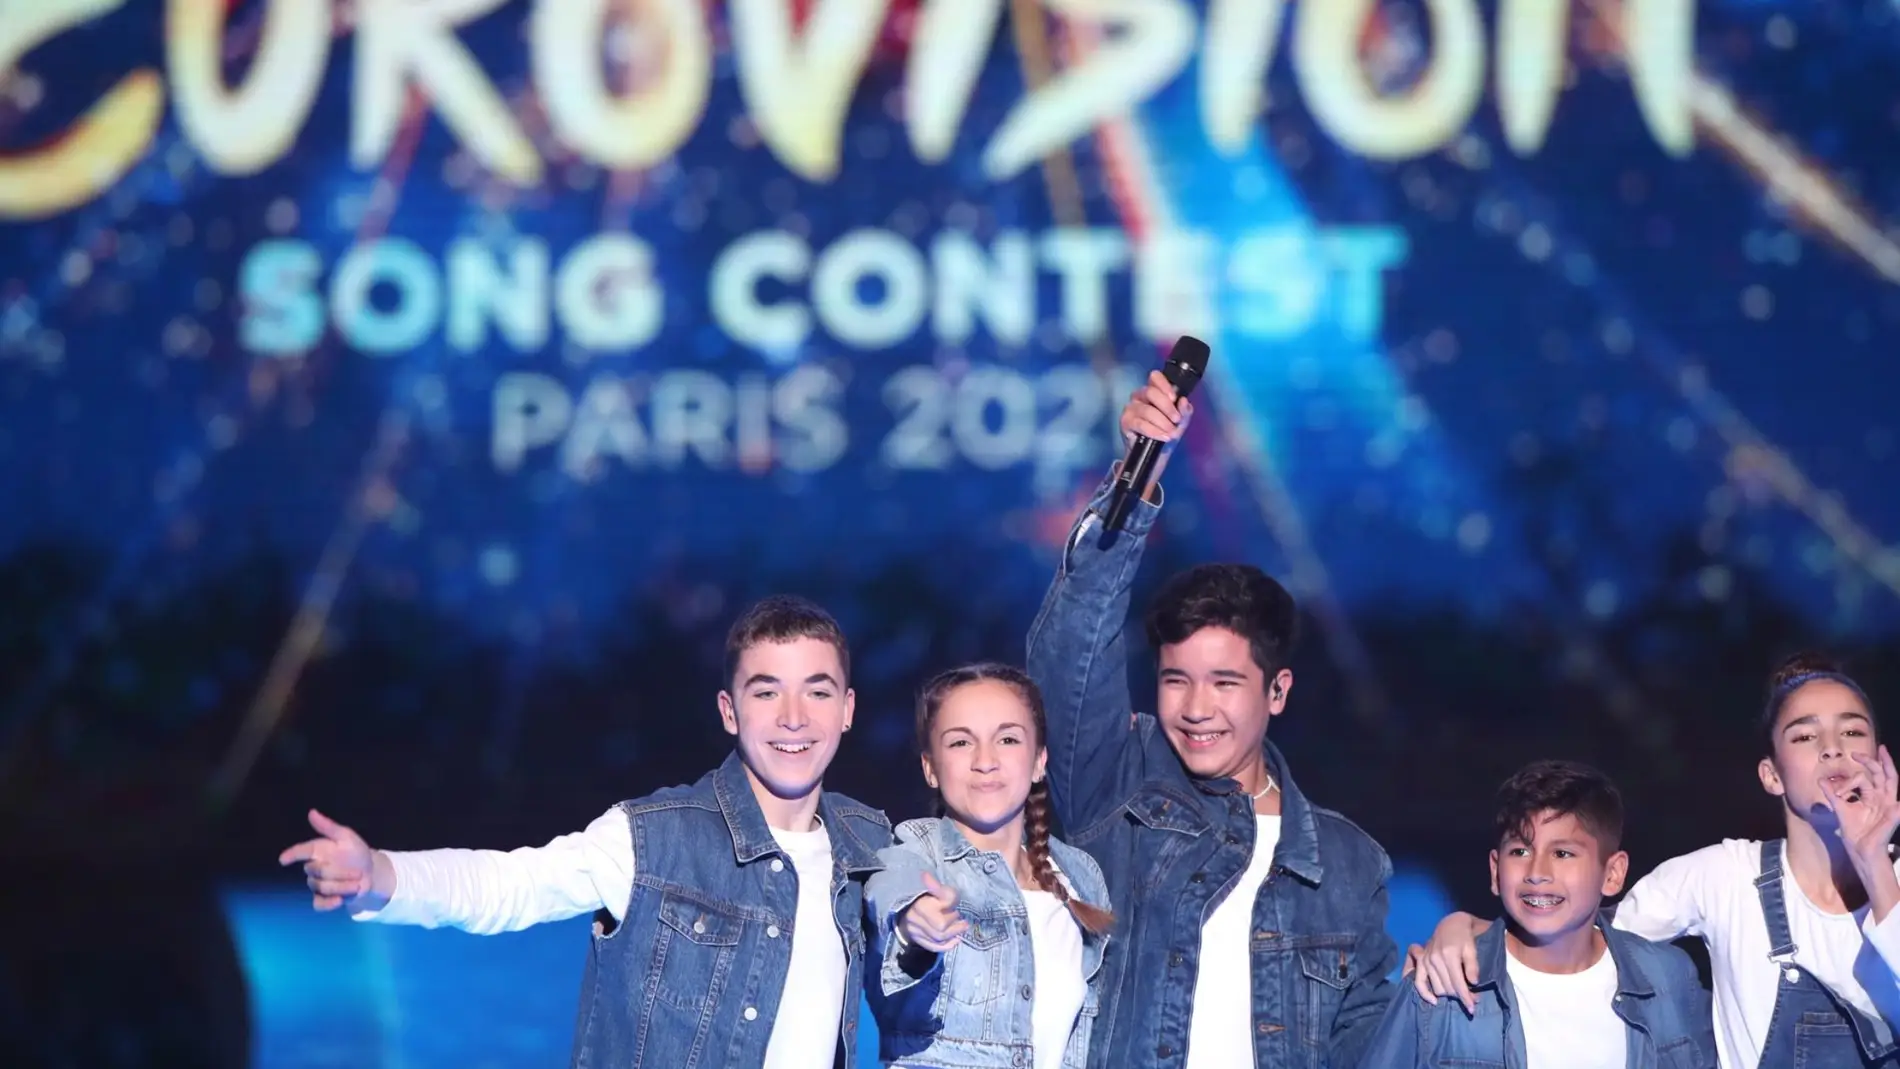 España acogerá este año la edición del Festival Eurovisión Junior tras la renuncia de Francia